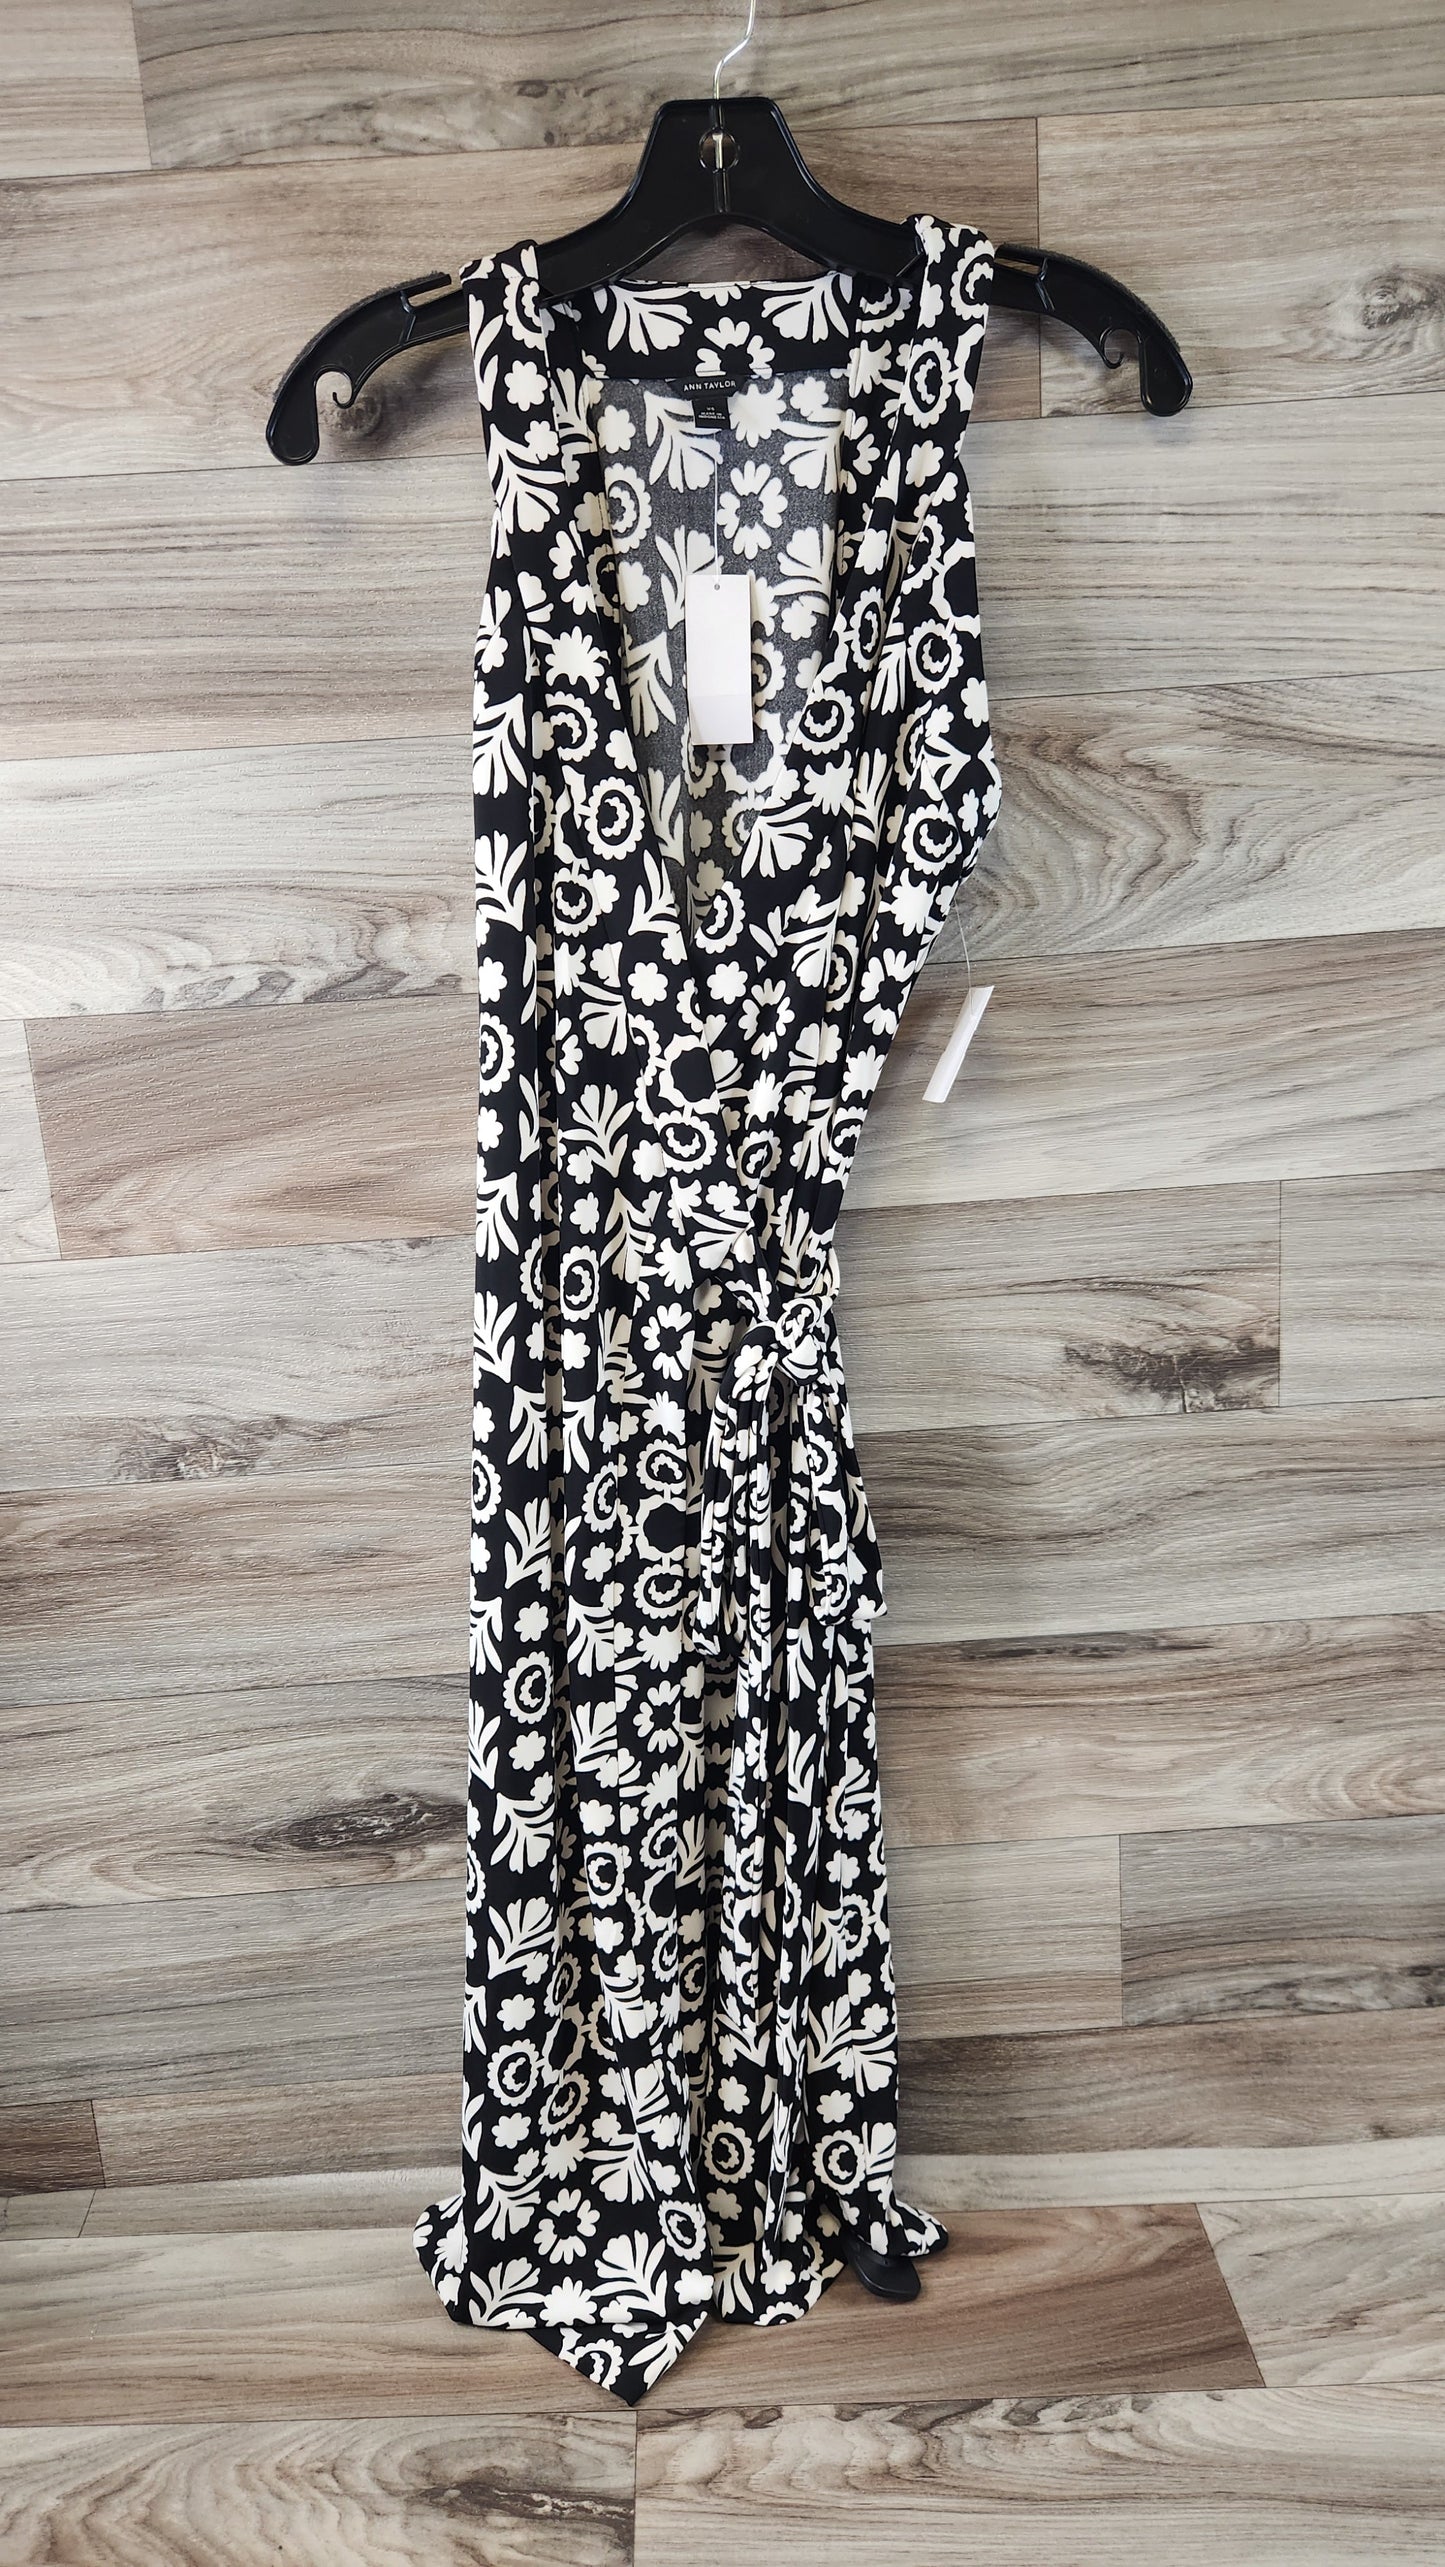 Black & White Dress Casual Midi Ann Taylor, Size Xs